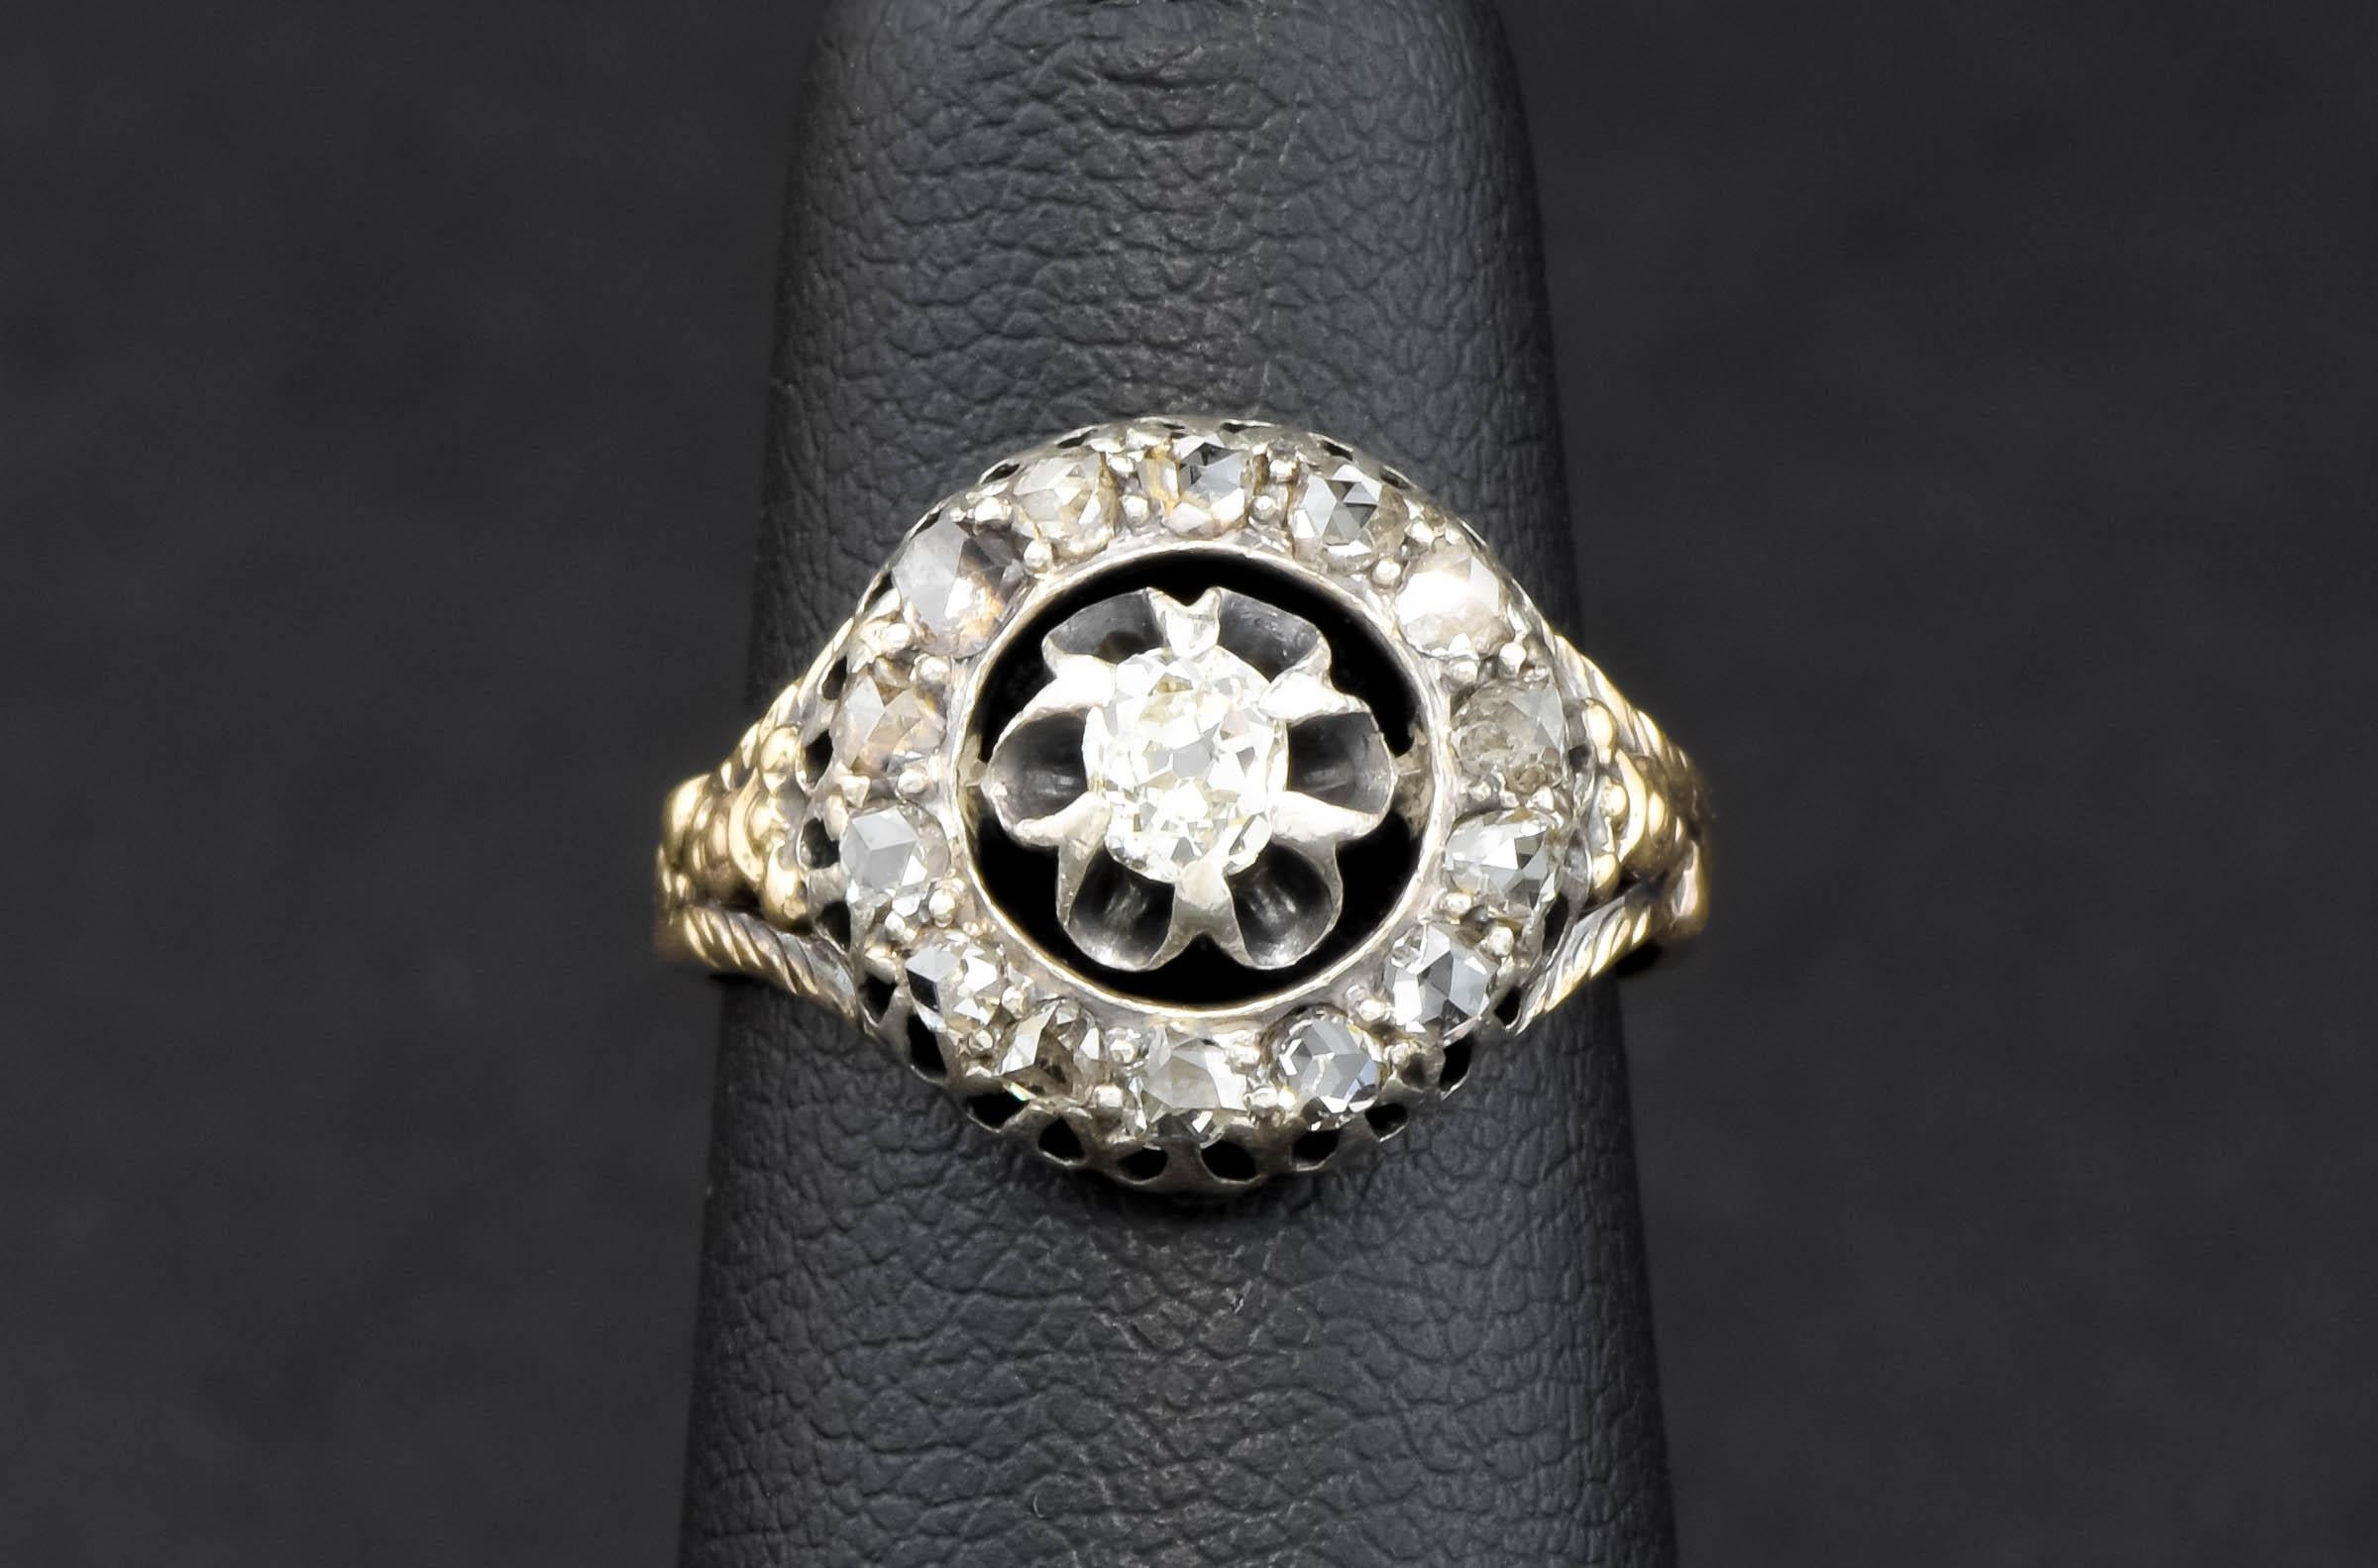 Une très charmante bague de style géorgien tardif/début victorien avec un halo de diamants - cette bague est presque certainement d'époque et fabriquée en Europe avec des diamants anciens. Le style et les détails sont magnifiques, même s'il ne